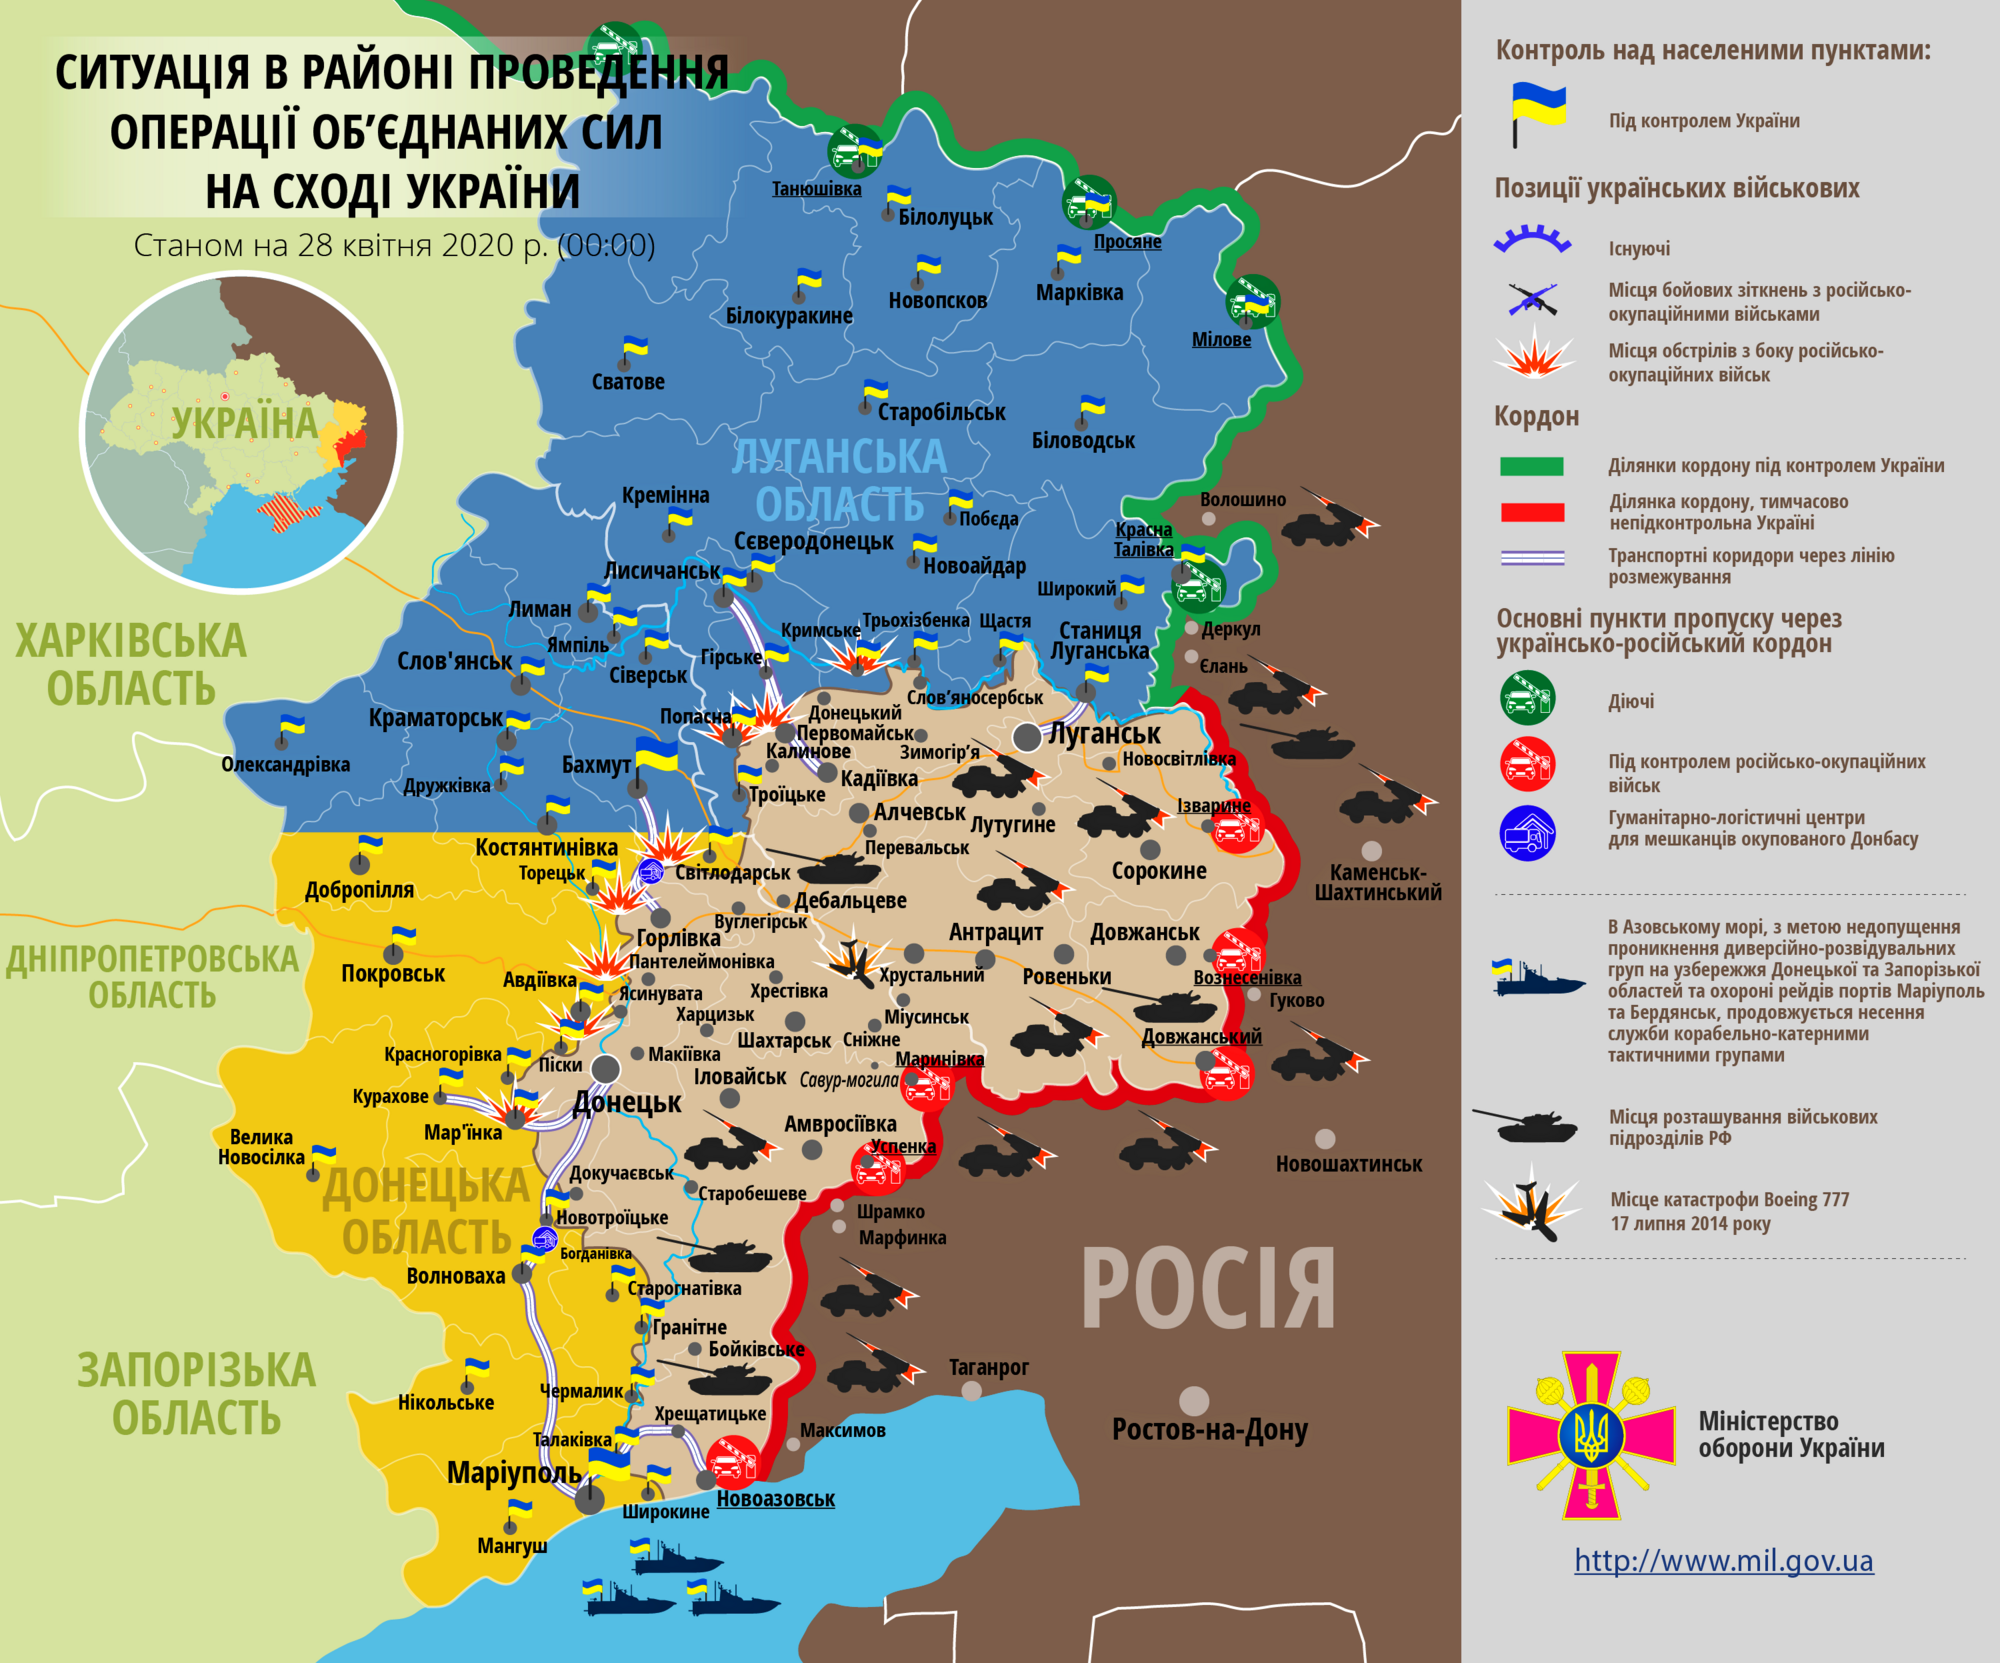 Ситуация в зоне ООС на Донбассе 28 апреля